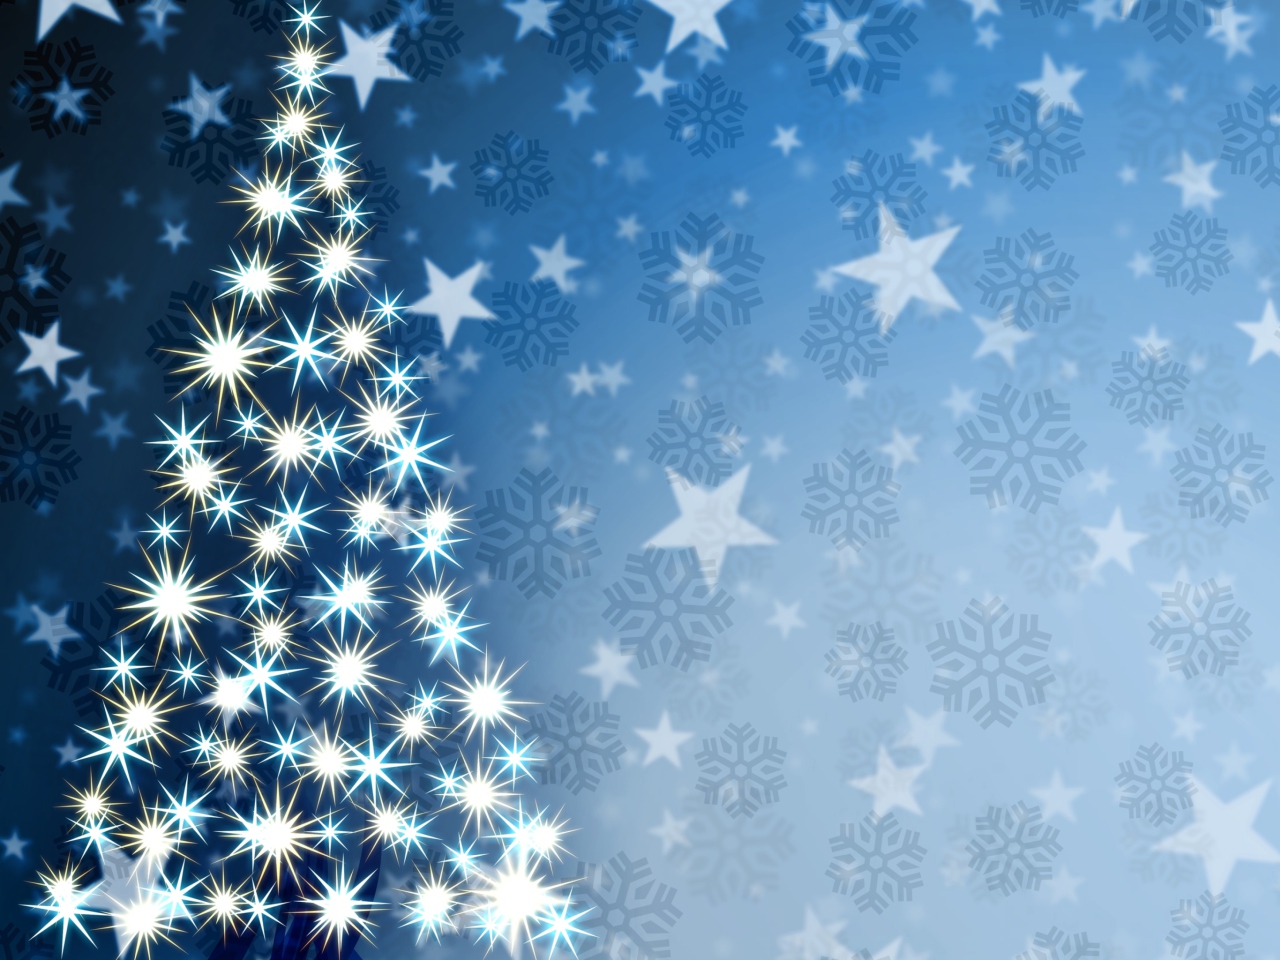 Das Christmas Tree Art Wallpaper 1280x960